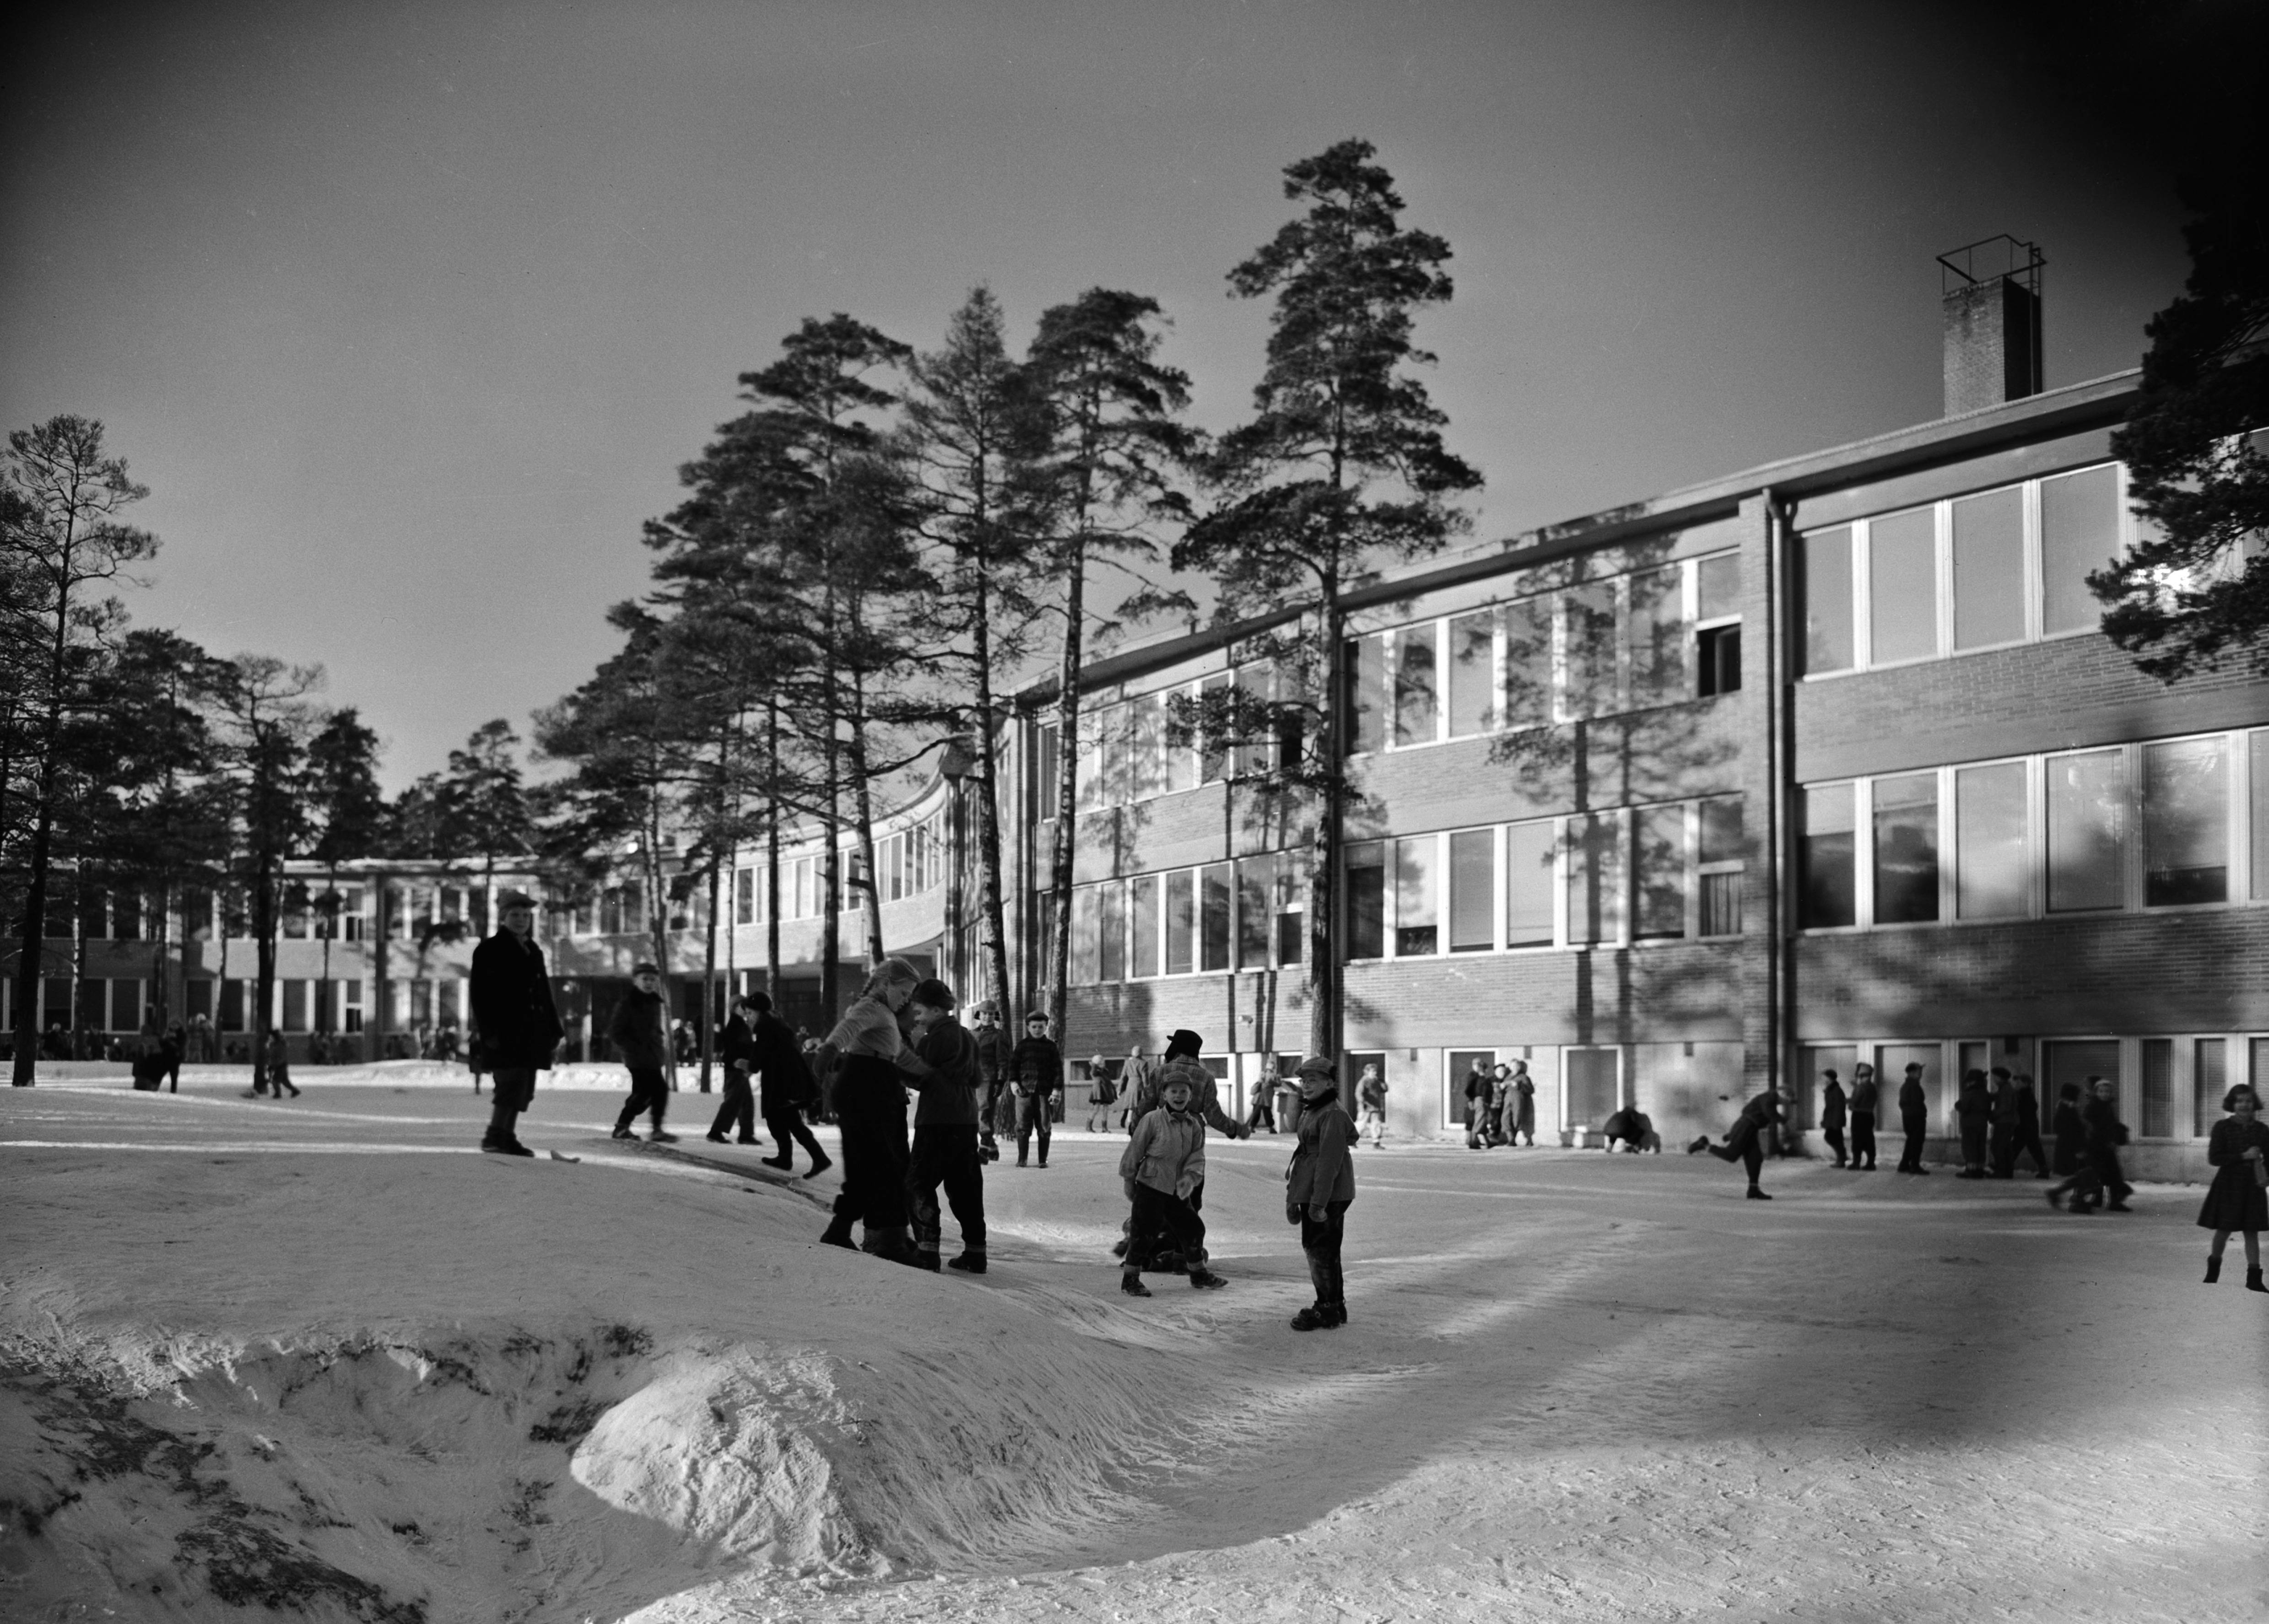 Lapsia Meilahden kansakoulun pihalla. Rakennuksen olivat suunnitelleet arkkitehdit Osmo Sipari ja Viljo Revell (ko kohteen arkkitehtikilpailun voittajat), kaarevarunkoinen koulu rakennettiin vuosina 1949-1953.